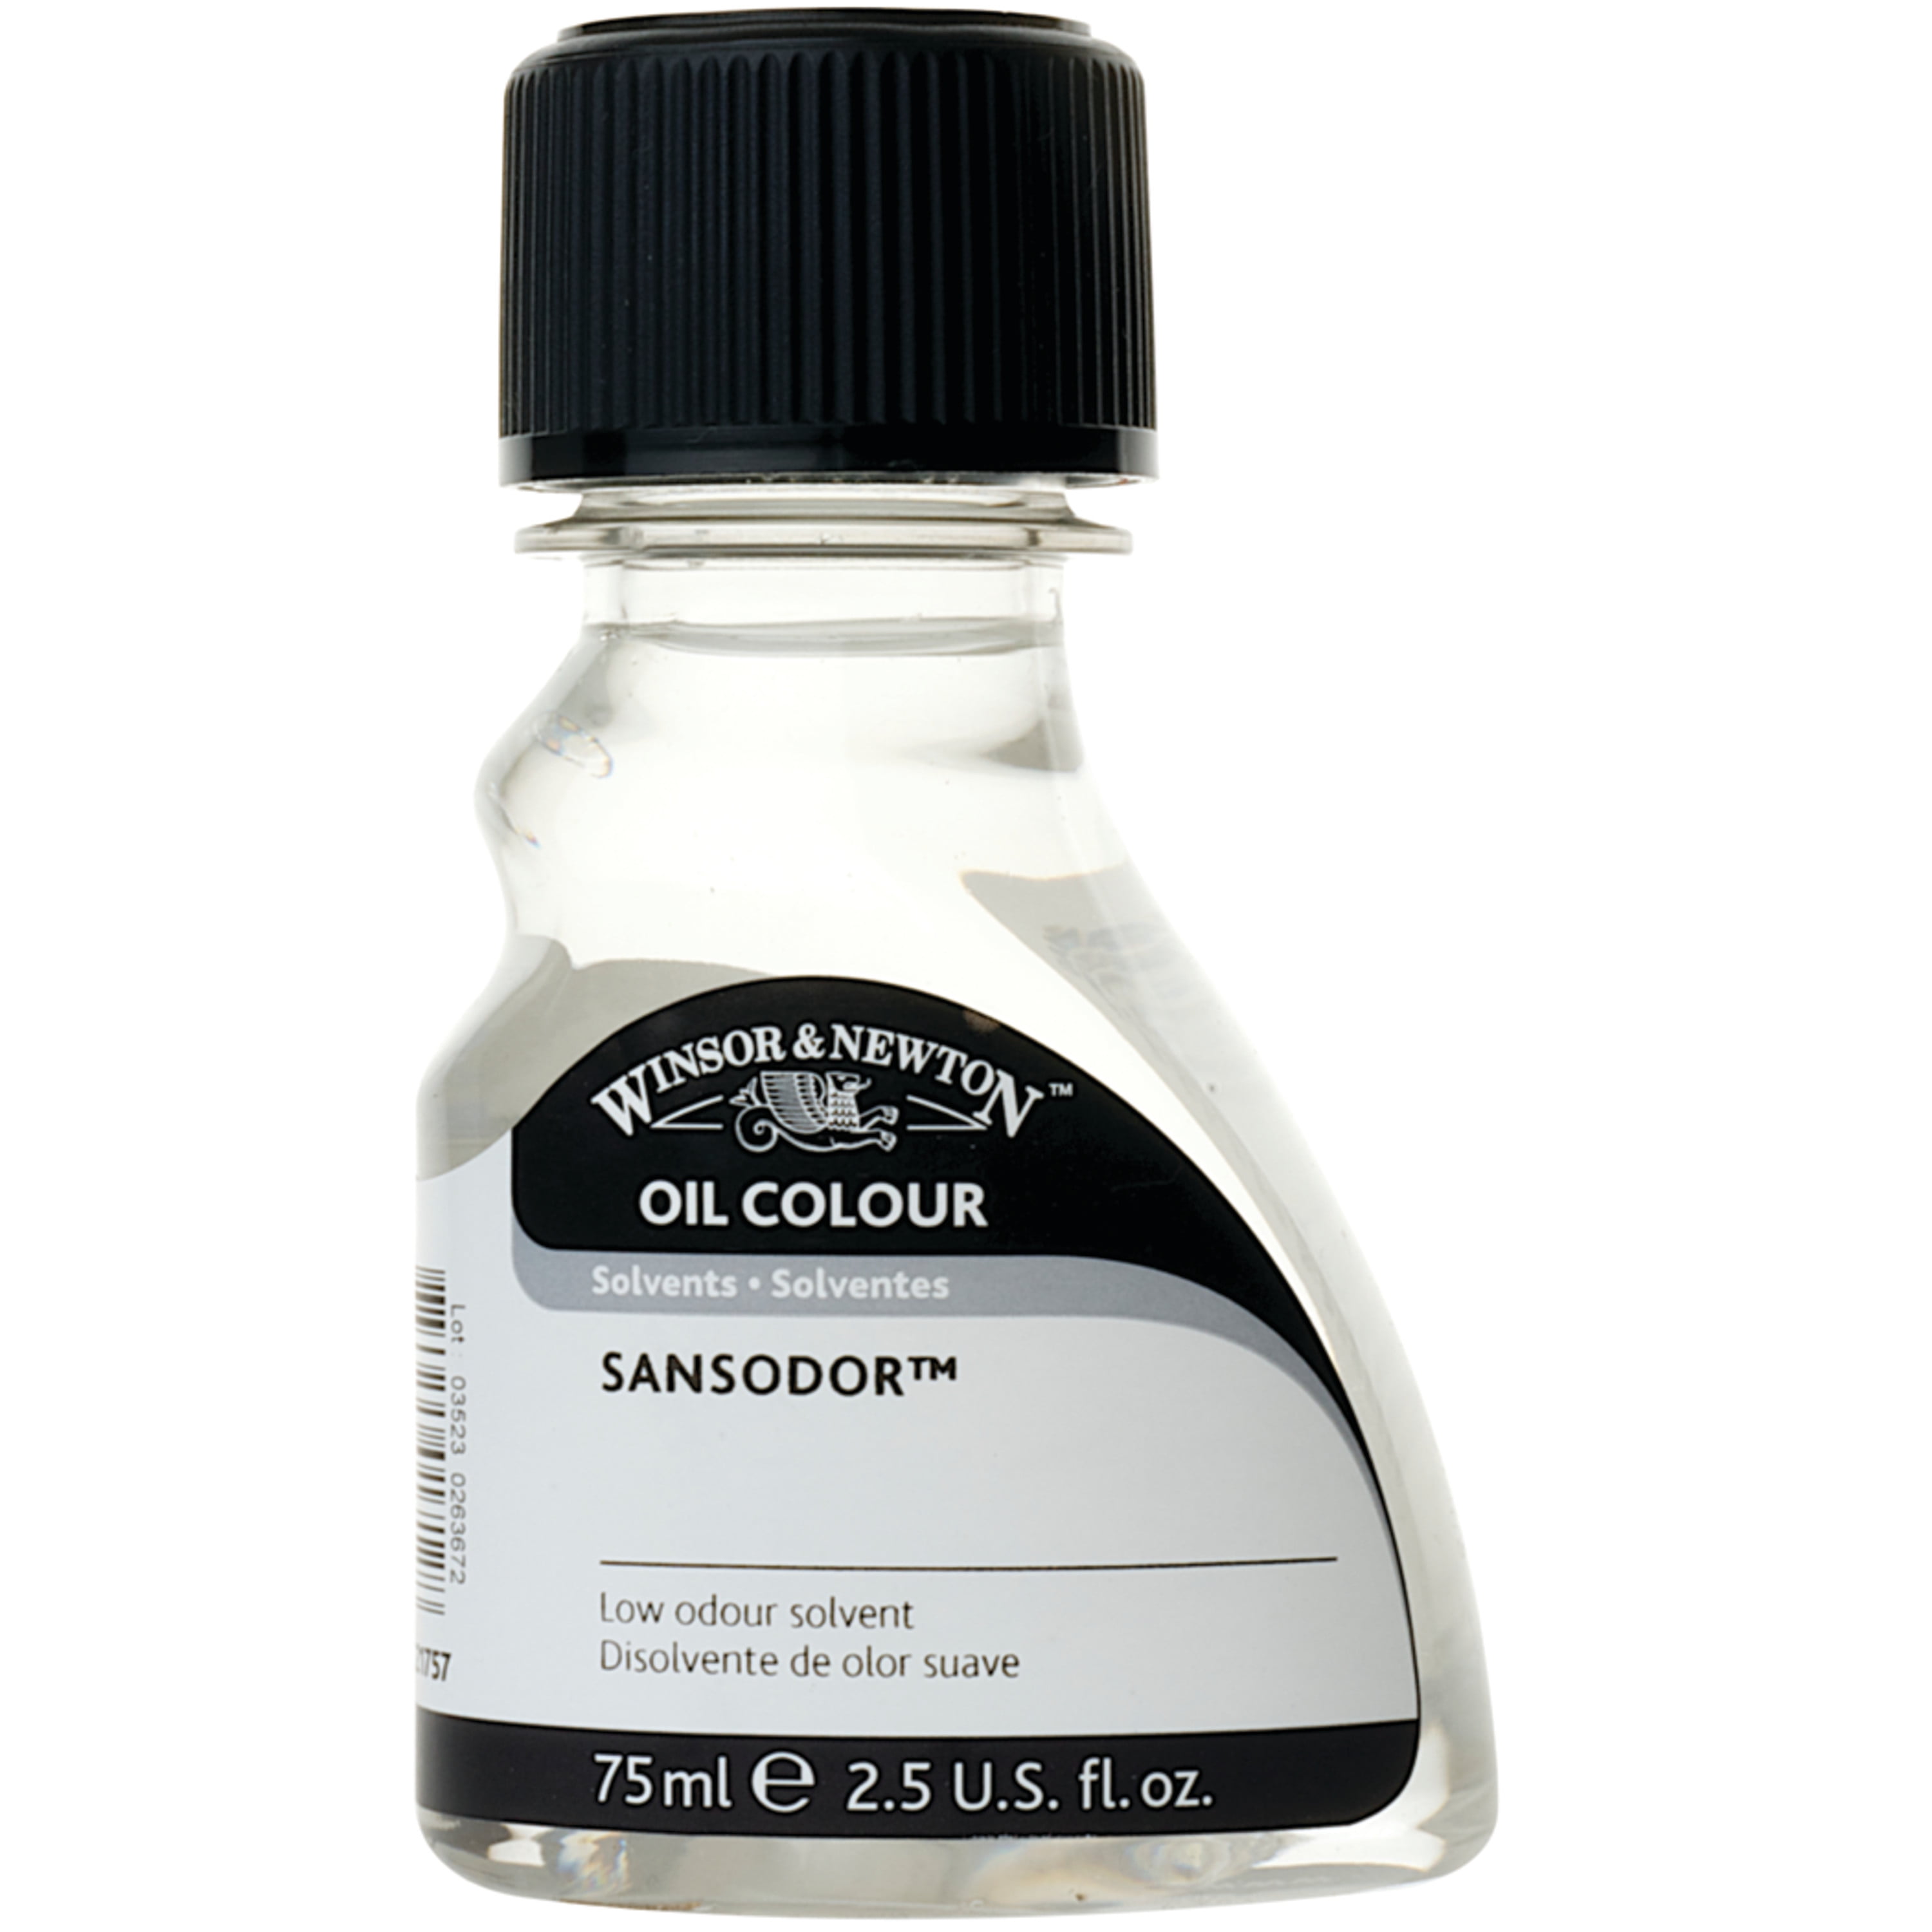 Utrecht Odorless Oil Paint Thinner - 4 oz Bottle